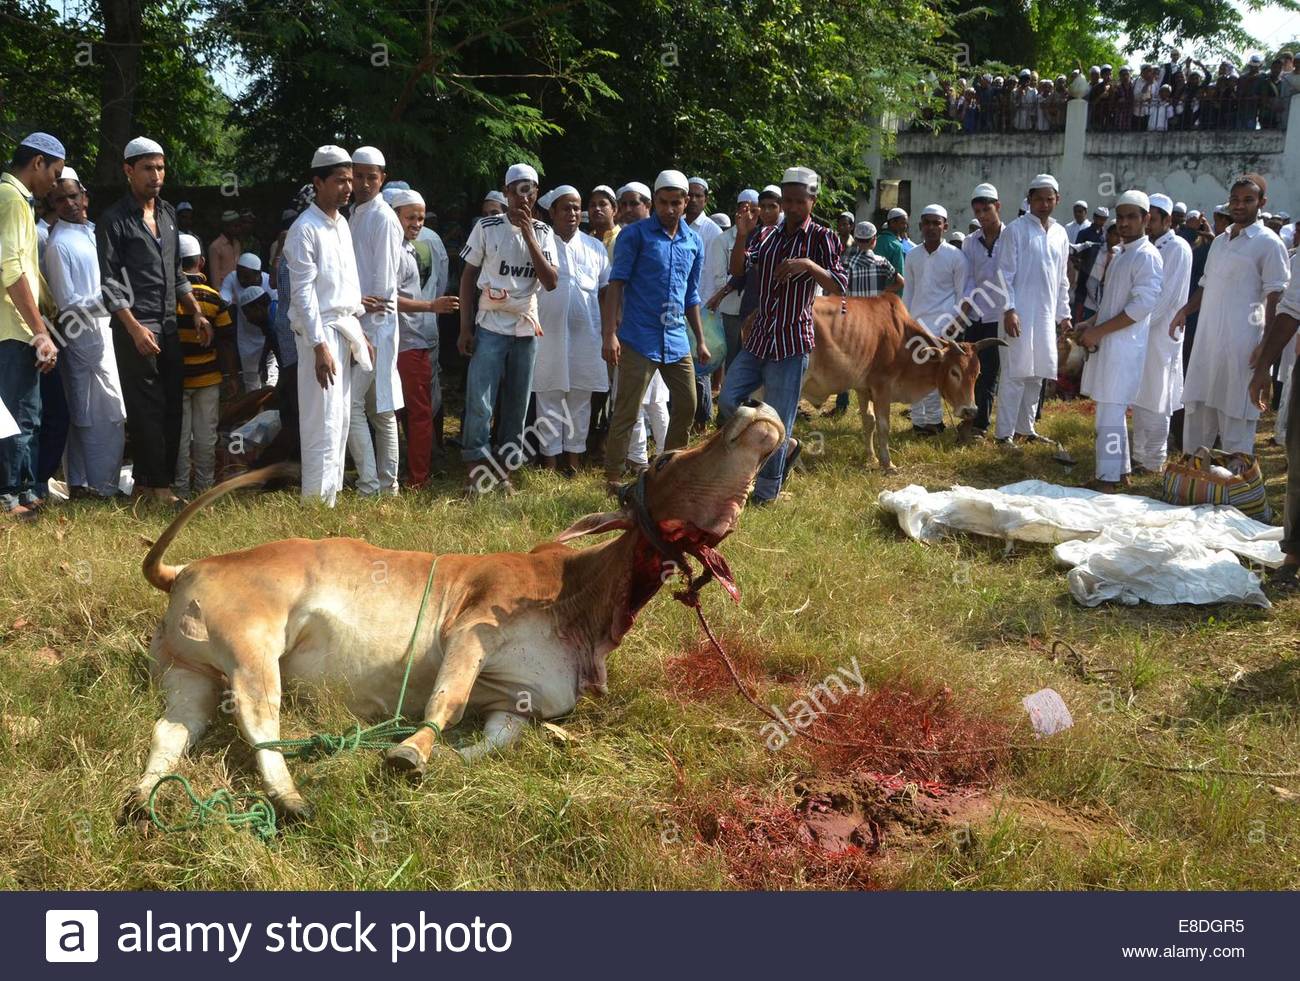 Dimapur, India. 6th October, 2014. Indian Muslim slaughter 